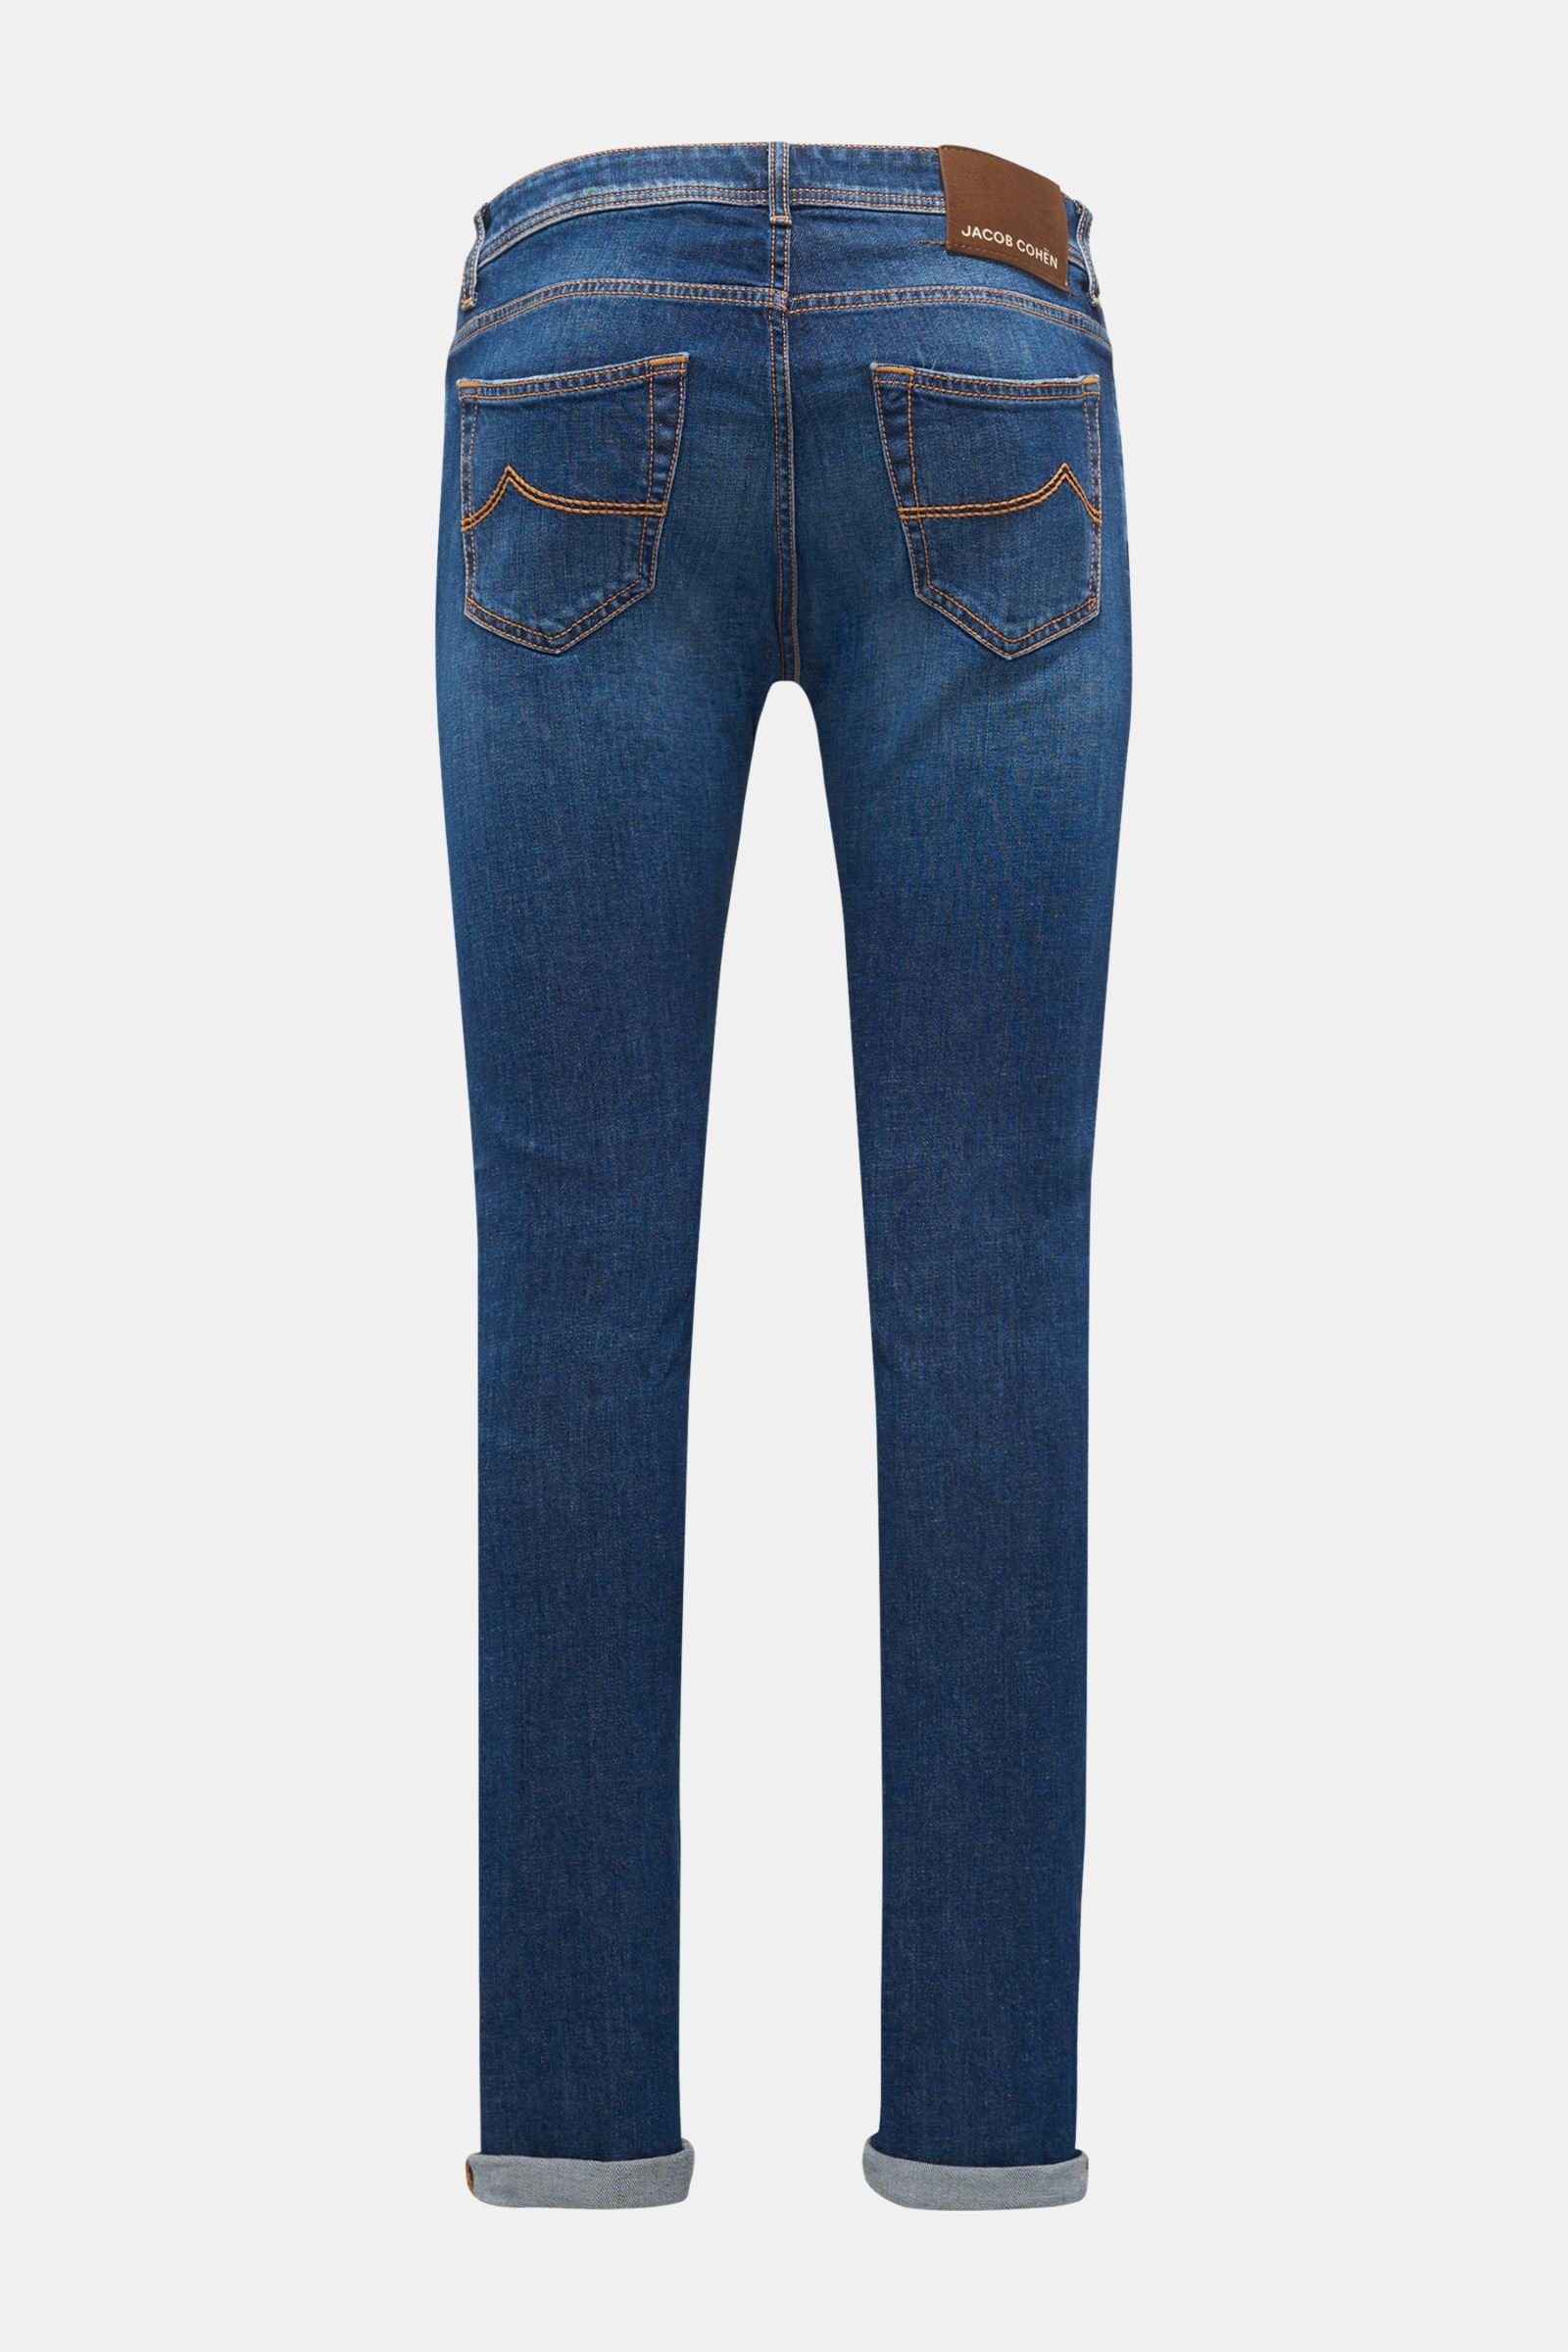 jacob cohen j622 comfort jeans